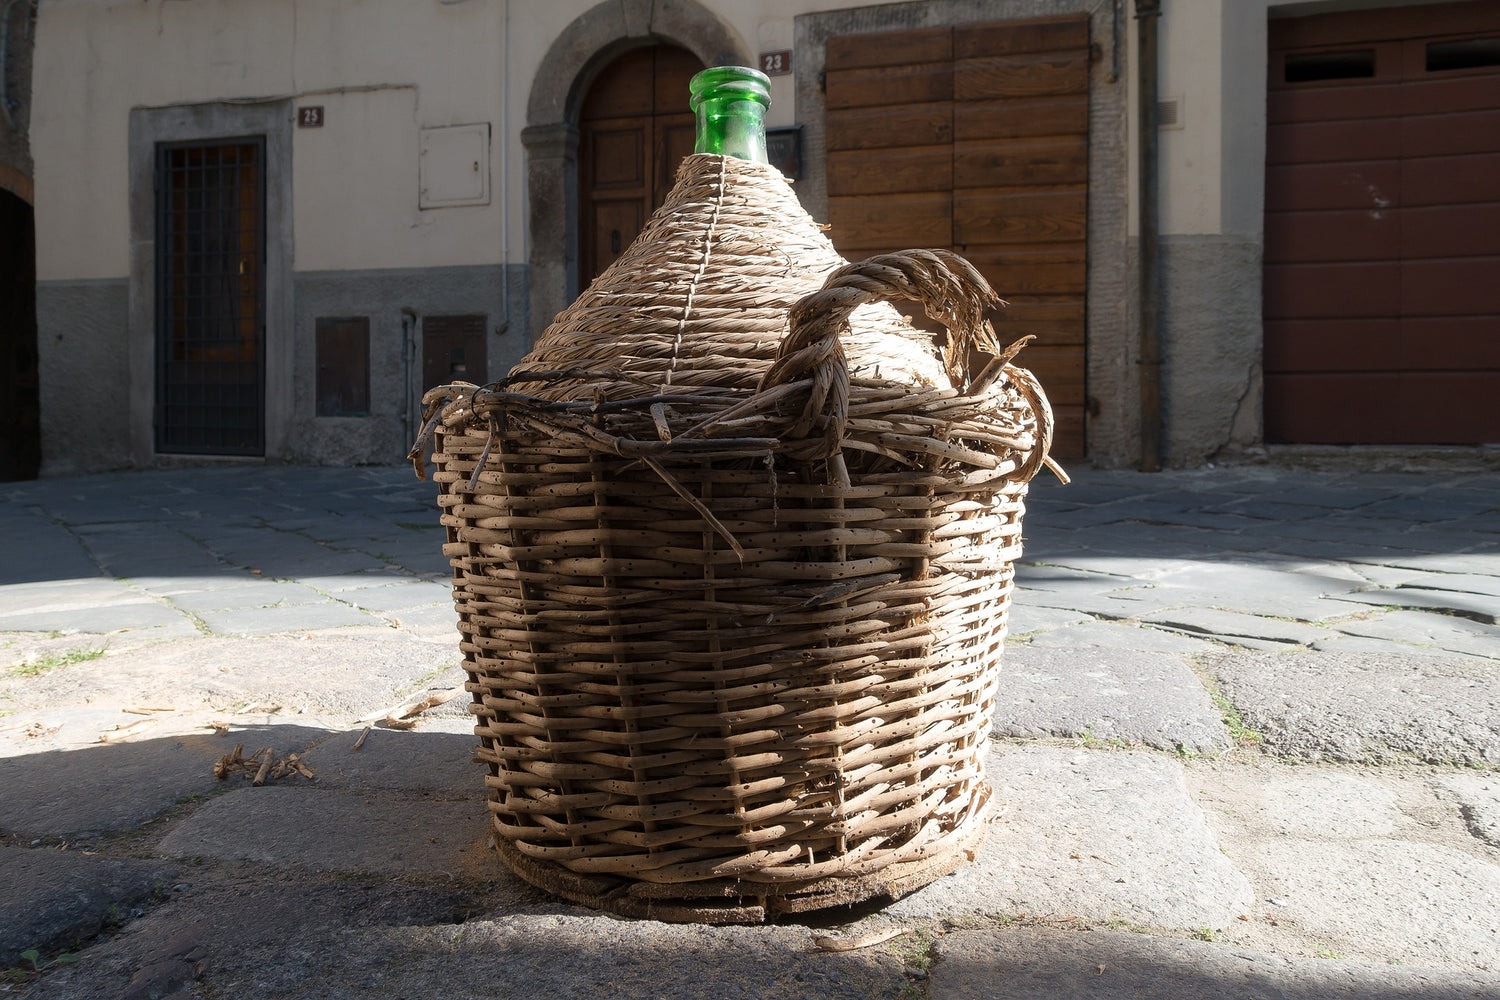 demijohn wine bottle wicker basket delivered